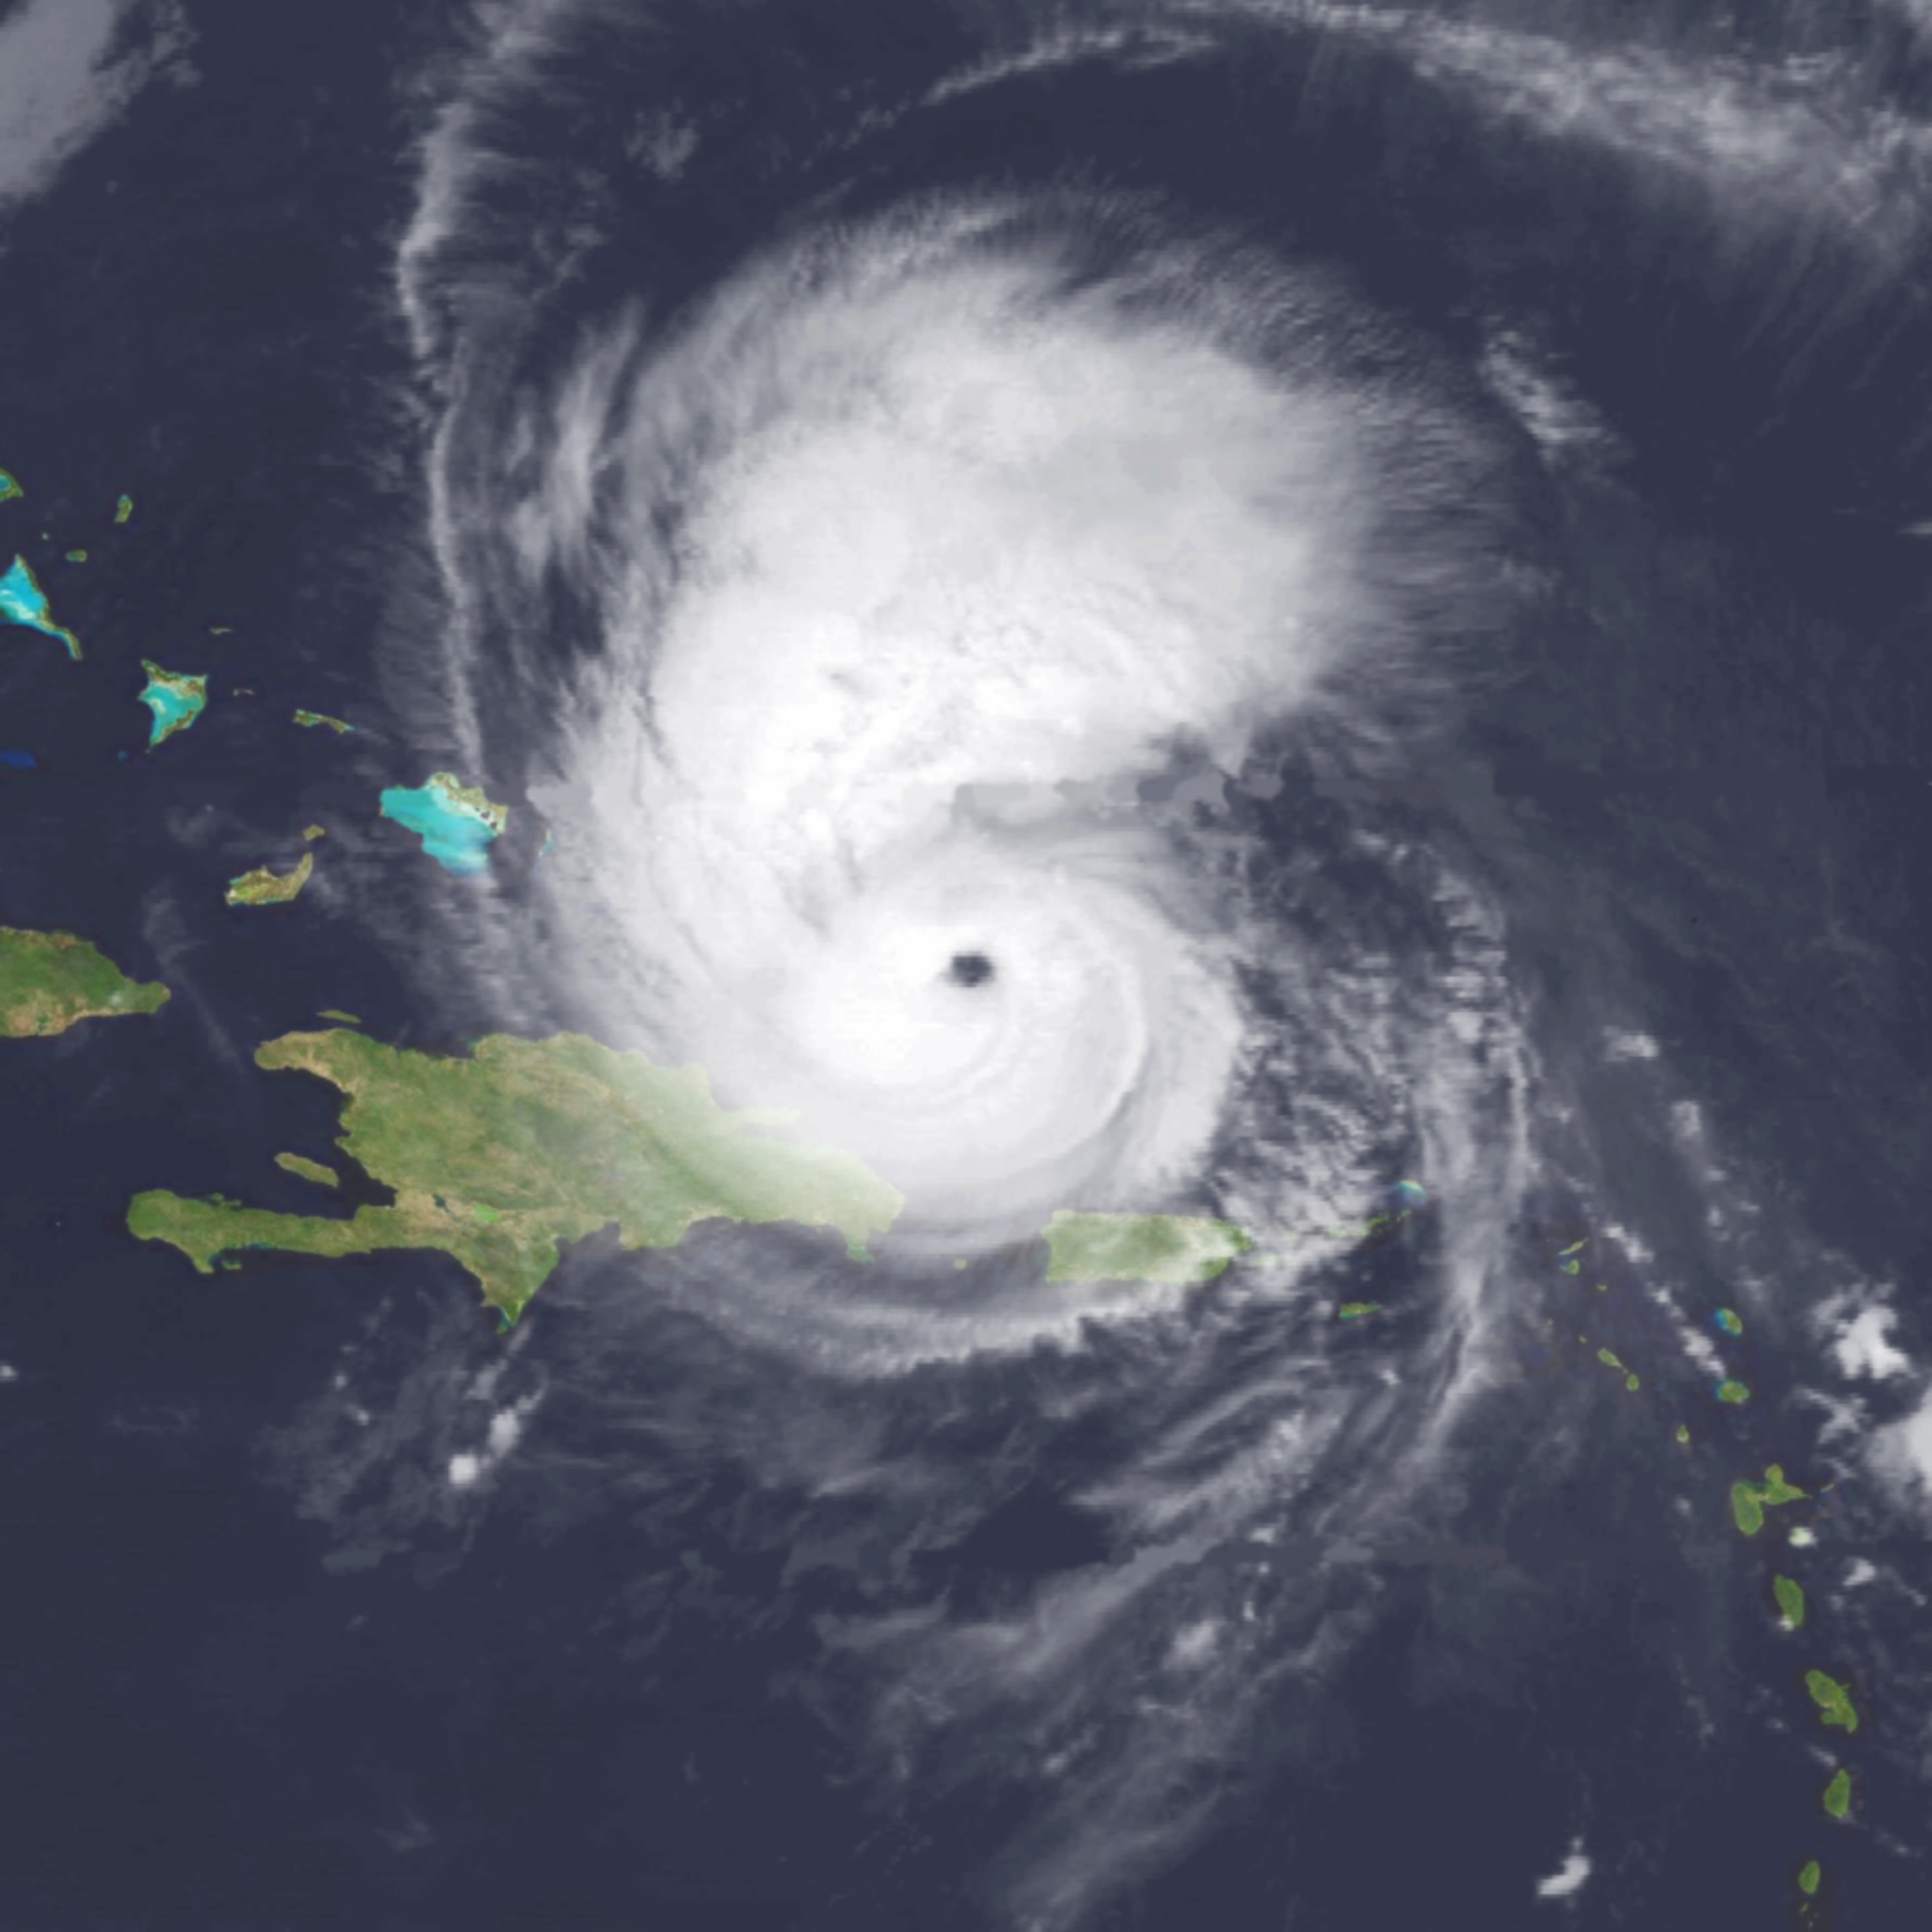 Category 3 Hurricane Bertha delayed sailing events at the 1996 Atlanta Games